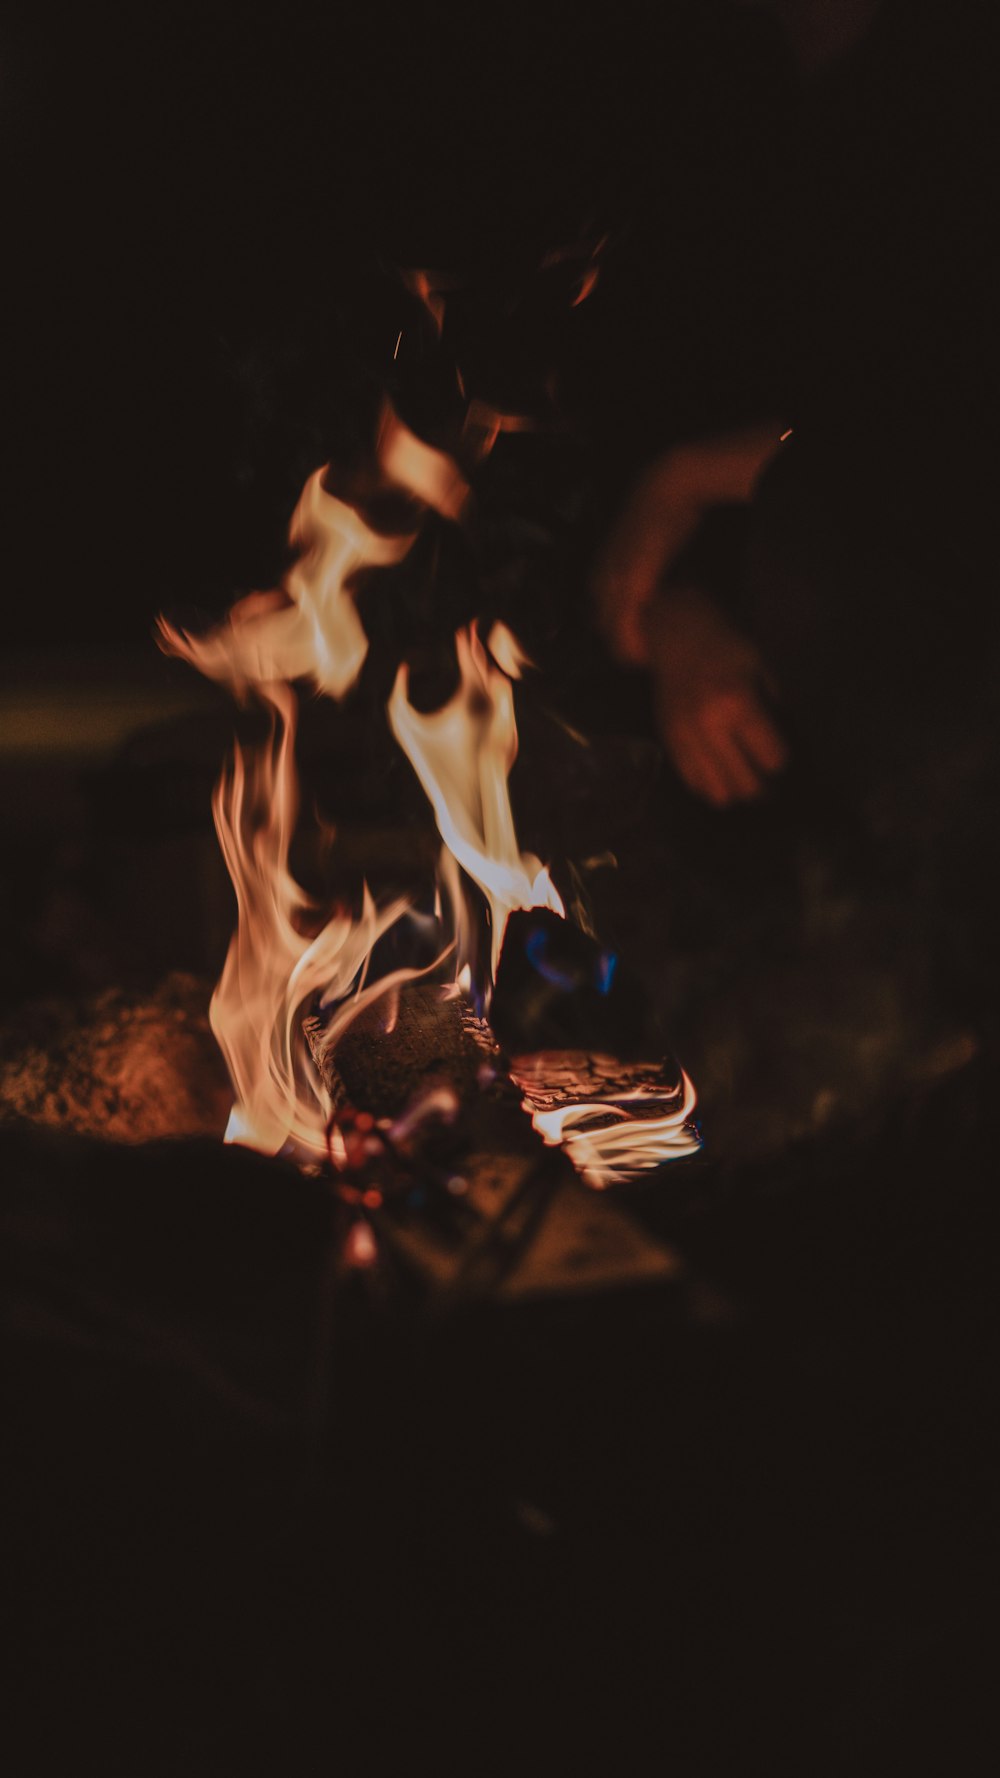 close up photo of burning wood